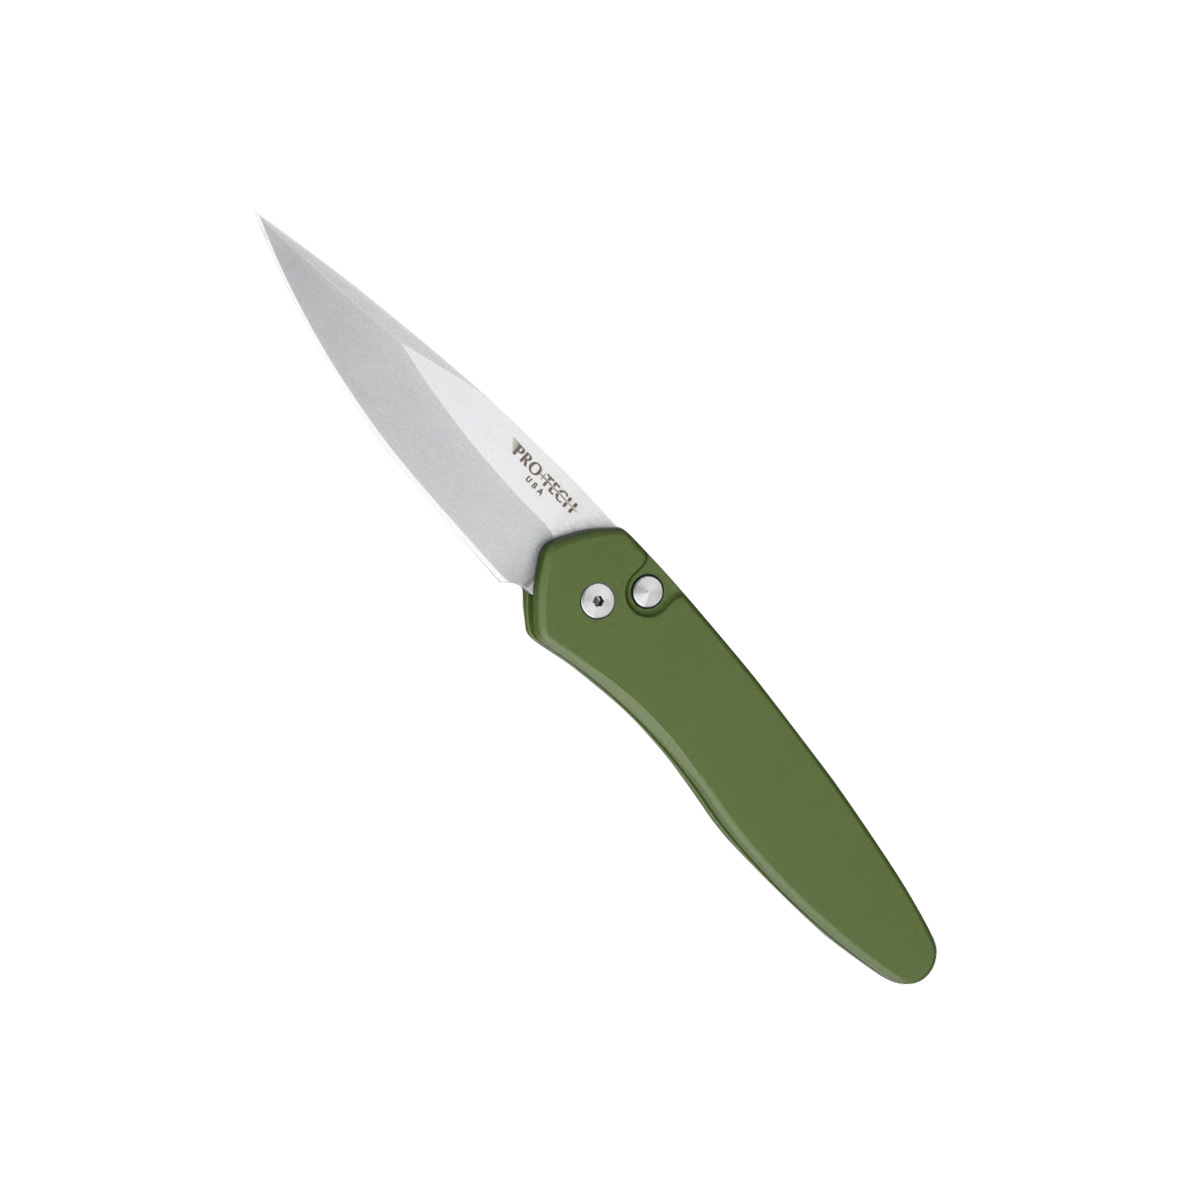 Автоматический складной нож Pro-Tech 3405 – Newport, сталь CPM-S35VN, рукоять зеленый алюминий - фото 1